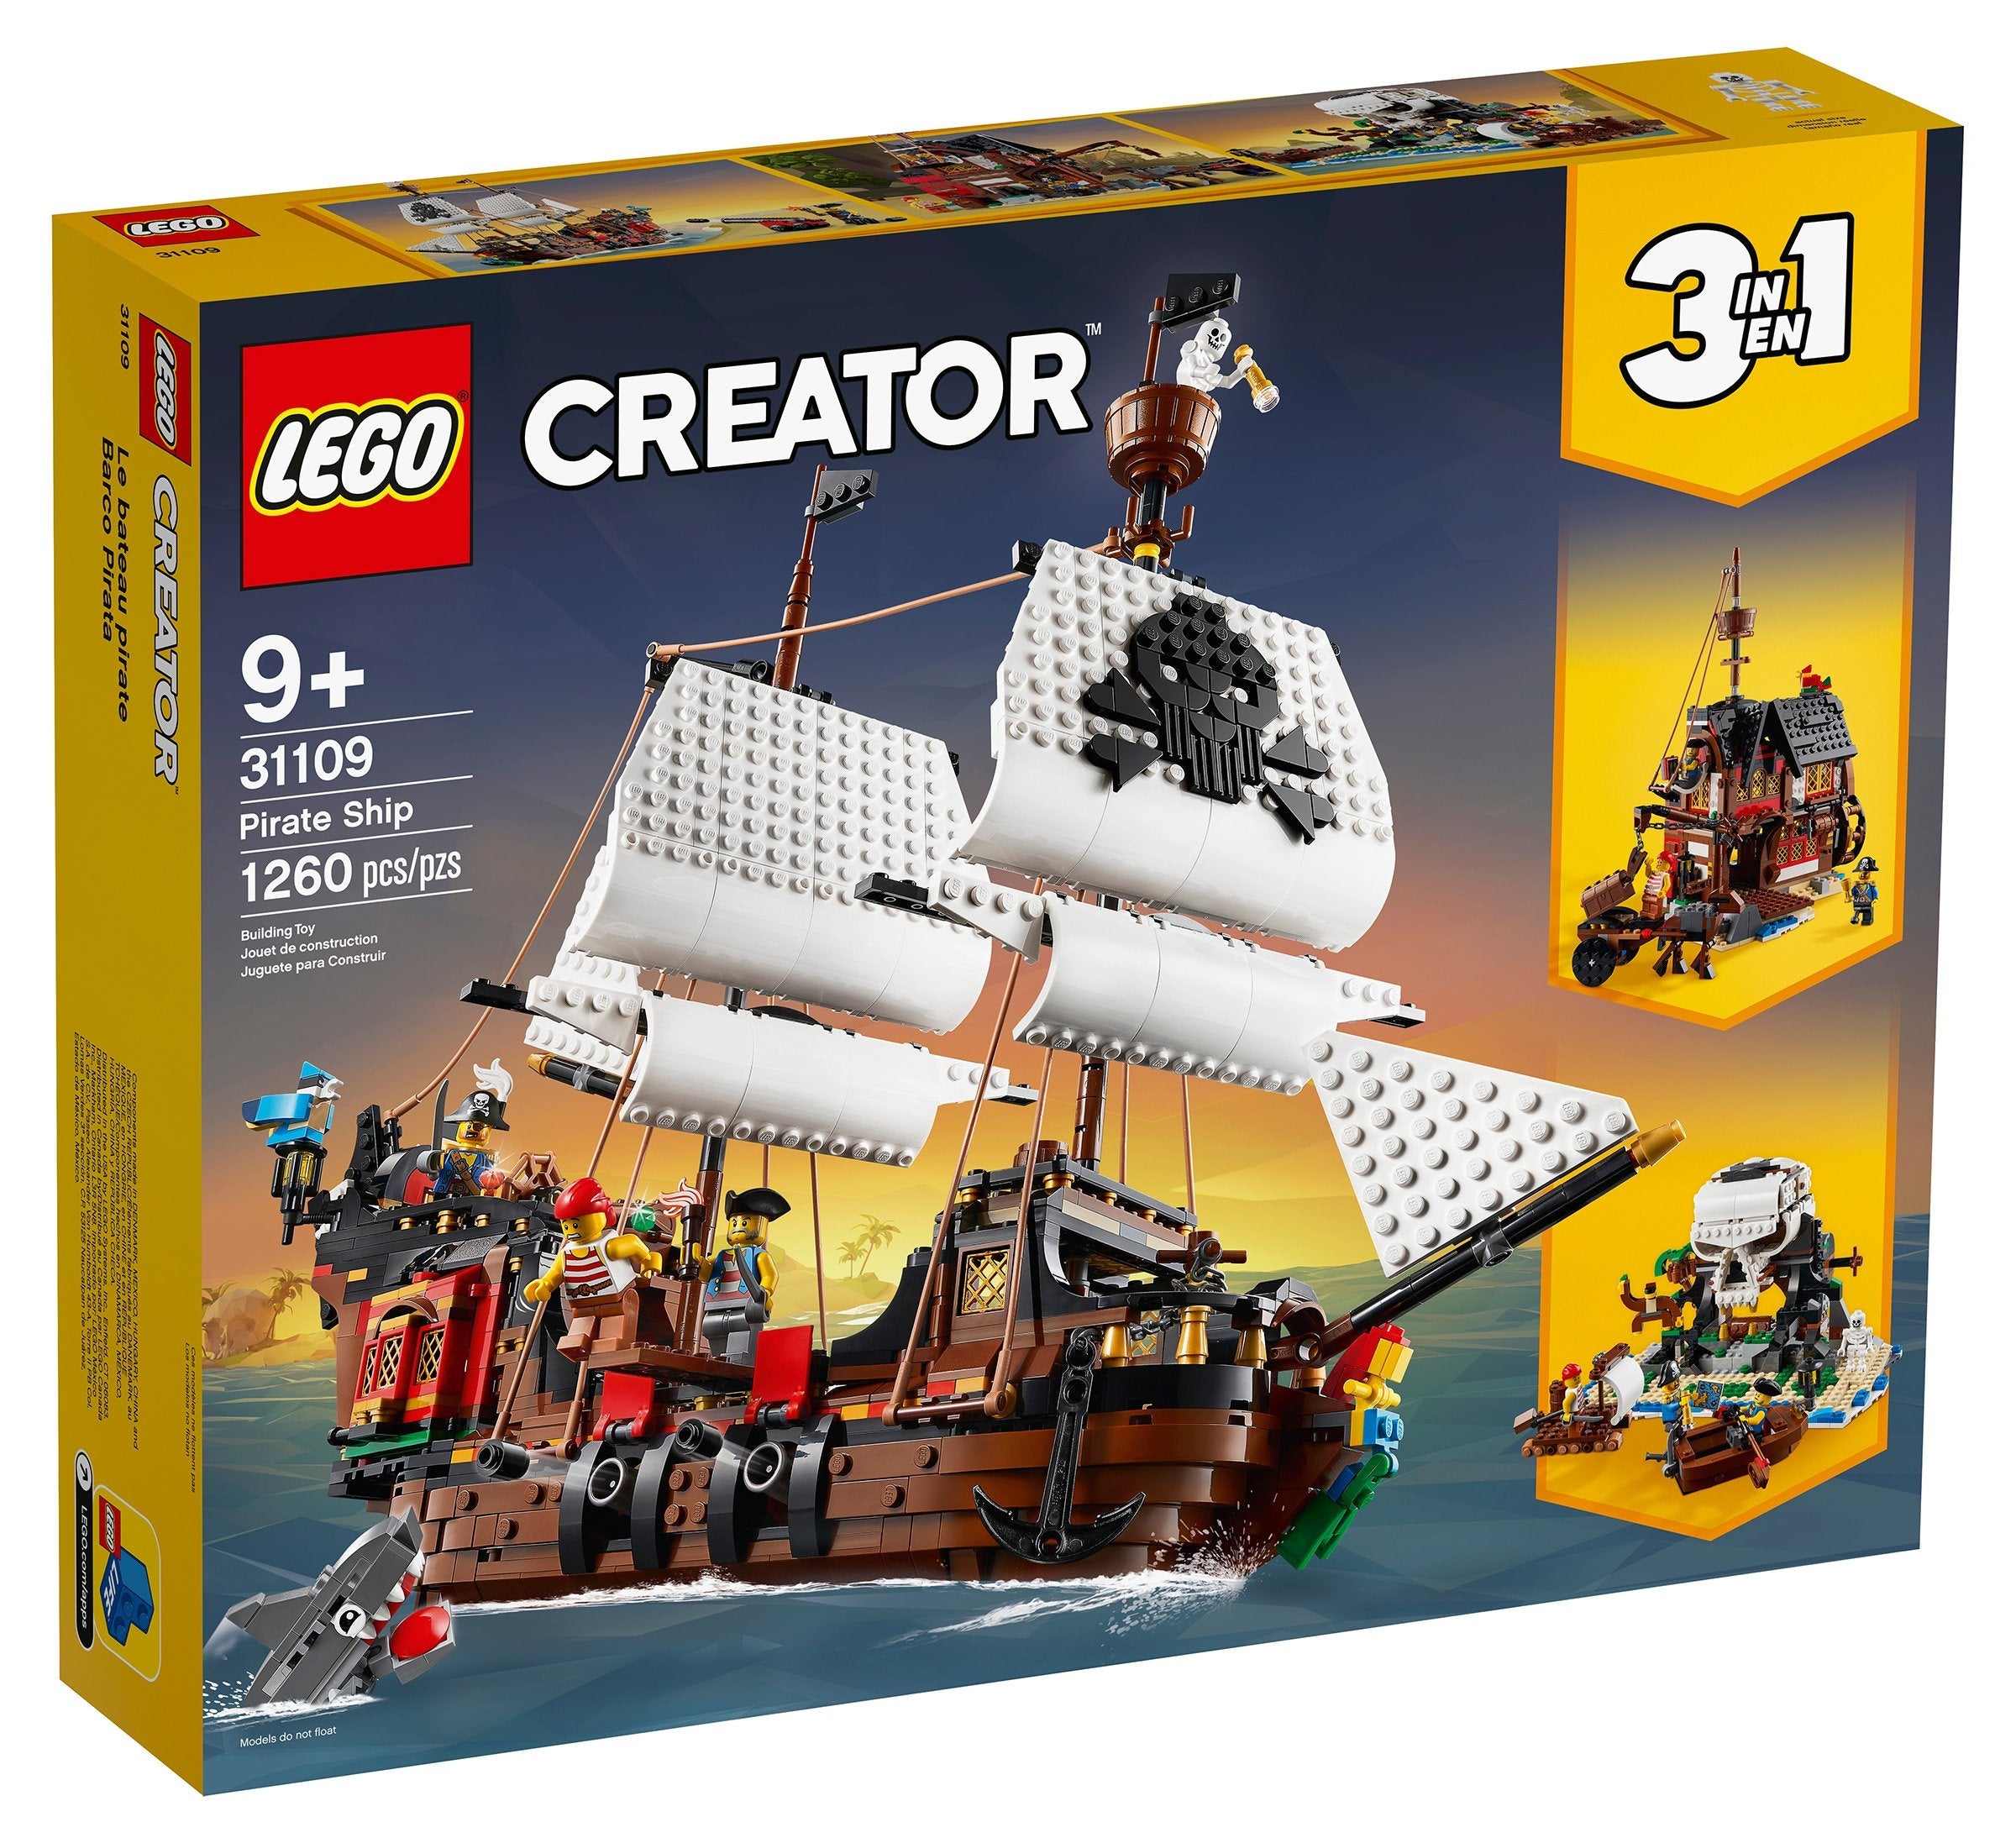 LEGO Creator 3-in-1 Spielzeugset Piratenschiff, Taverne und Totenkopfinsel (31109) - im GOLDSTIEN.SHOP verfügbar mit Gratisversand ab Schweizer Lager! (5702016616354)